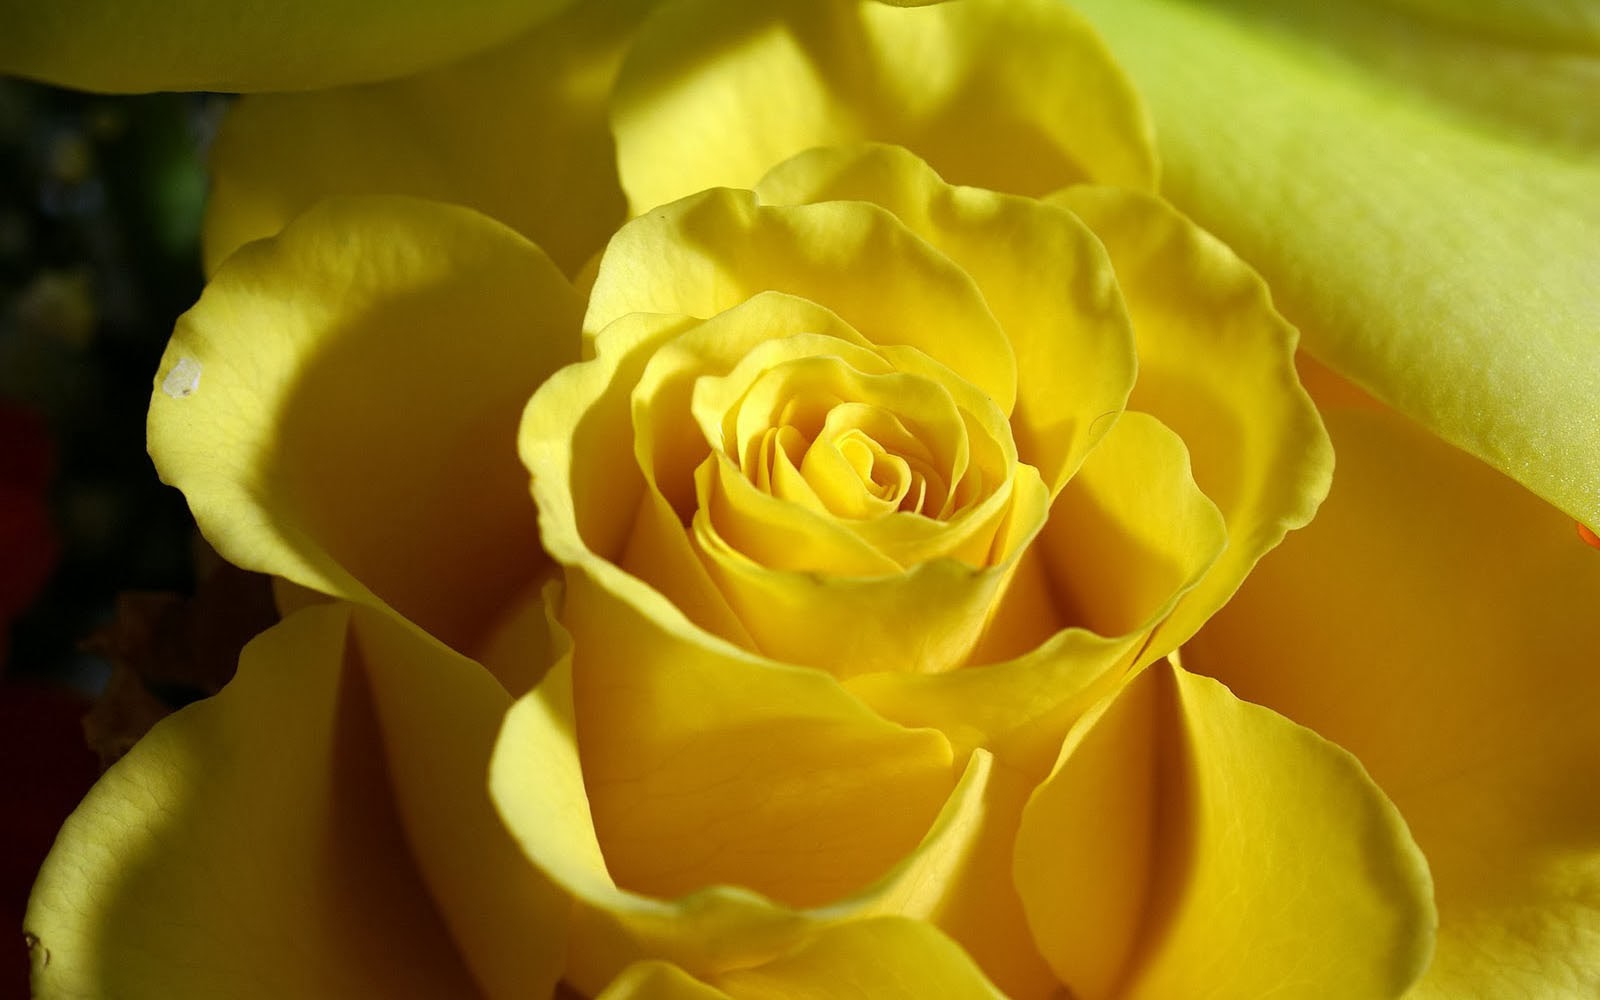 rose images photos fonds d'écran,julia enfant rose,fleur,roses de jardin,jaune,pétale